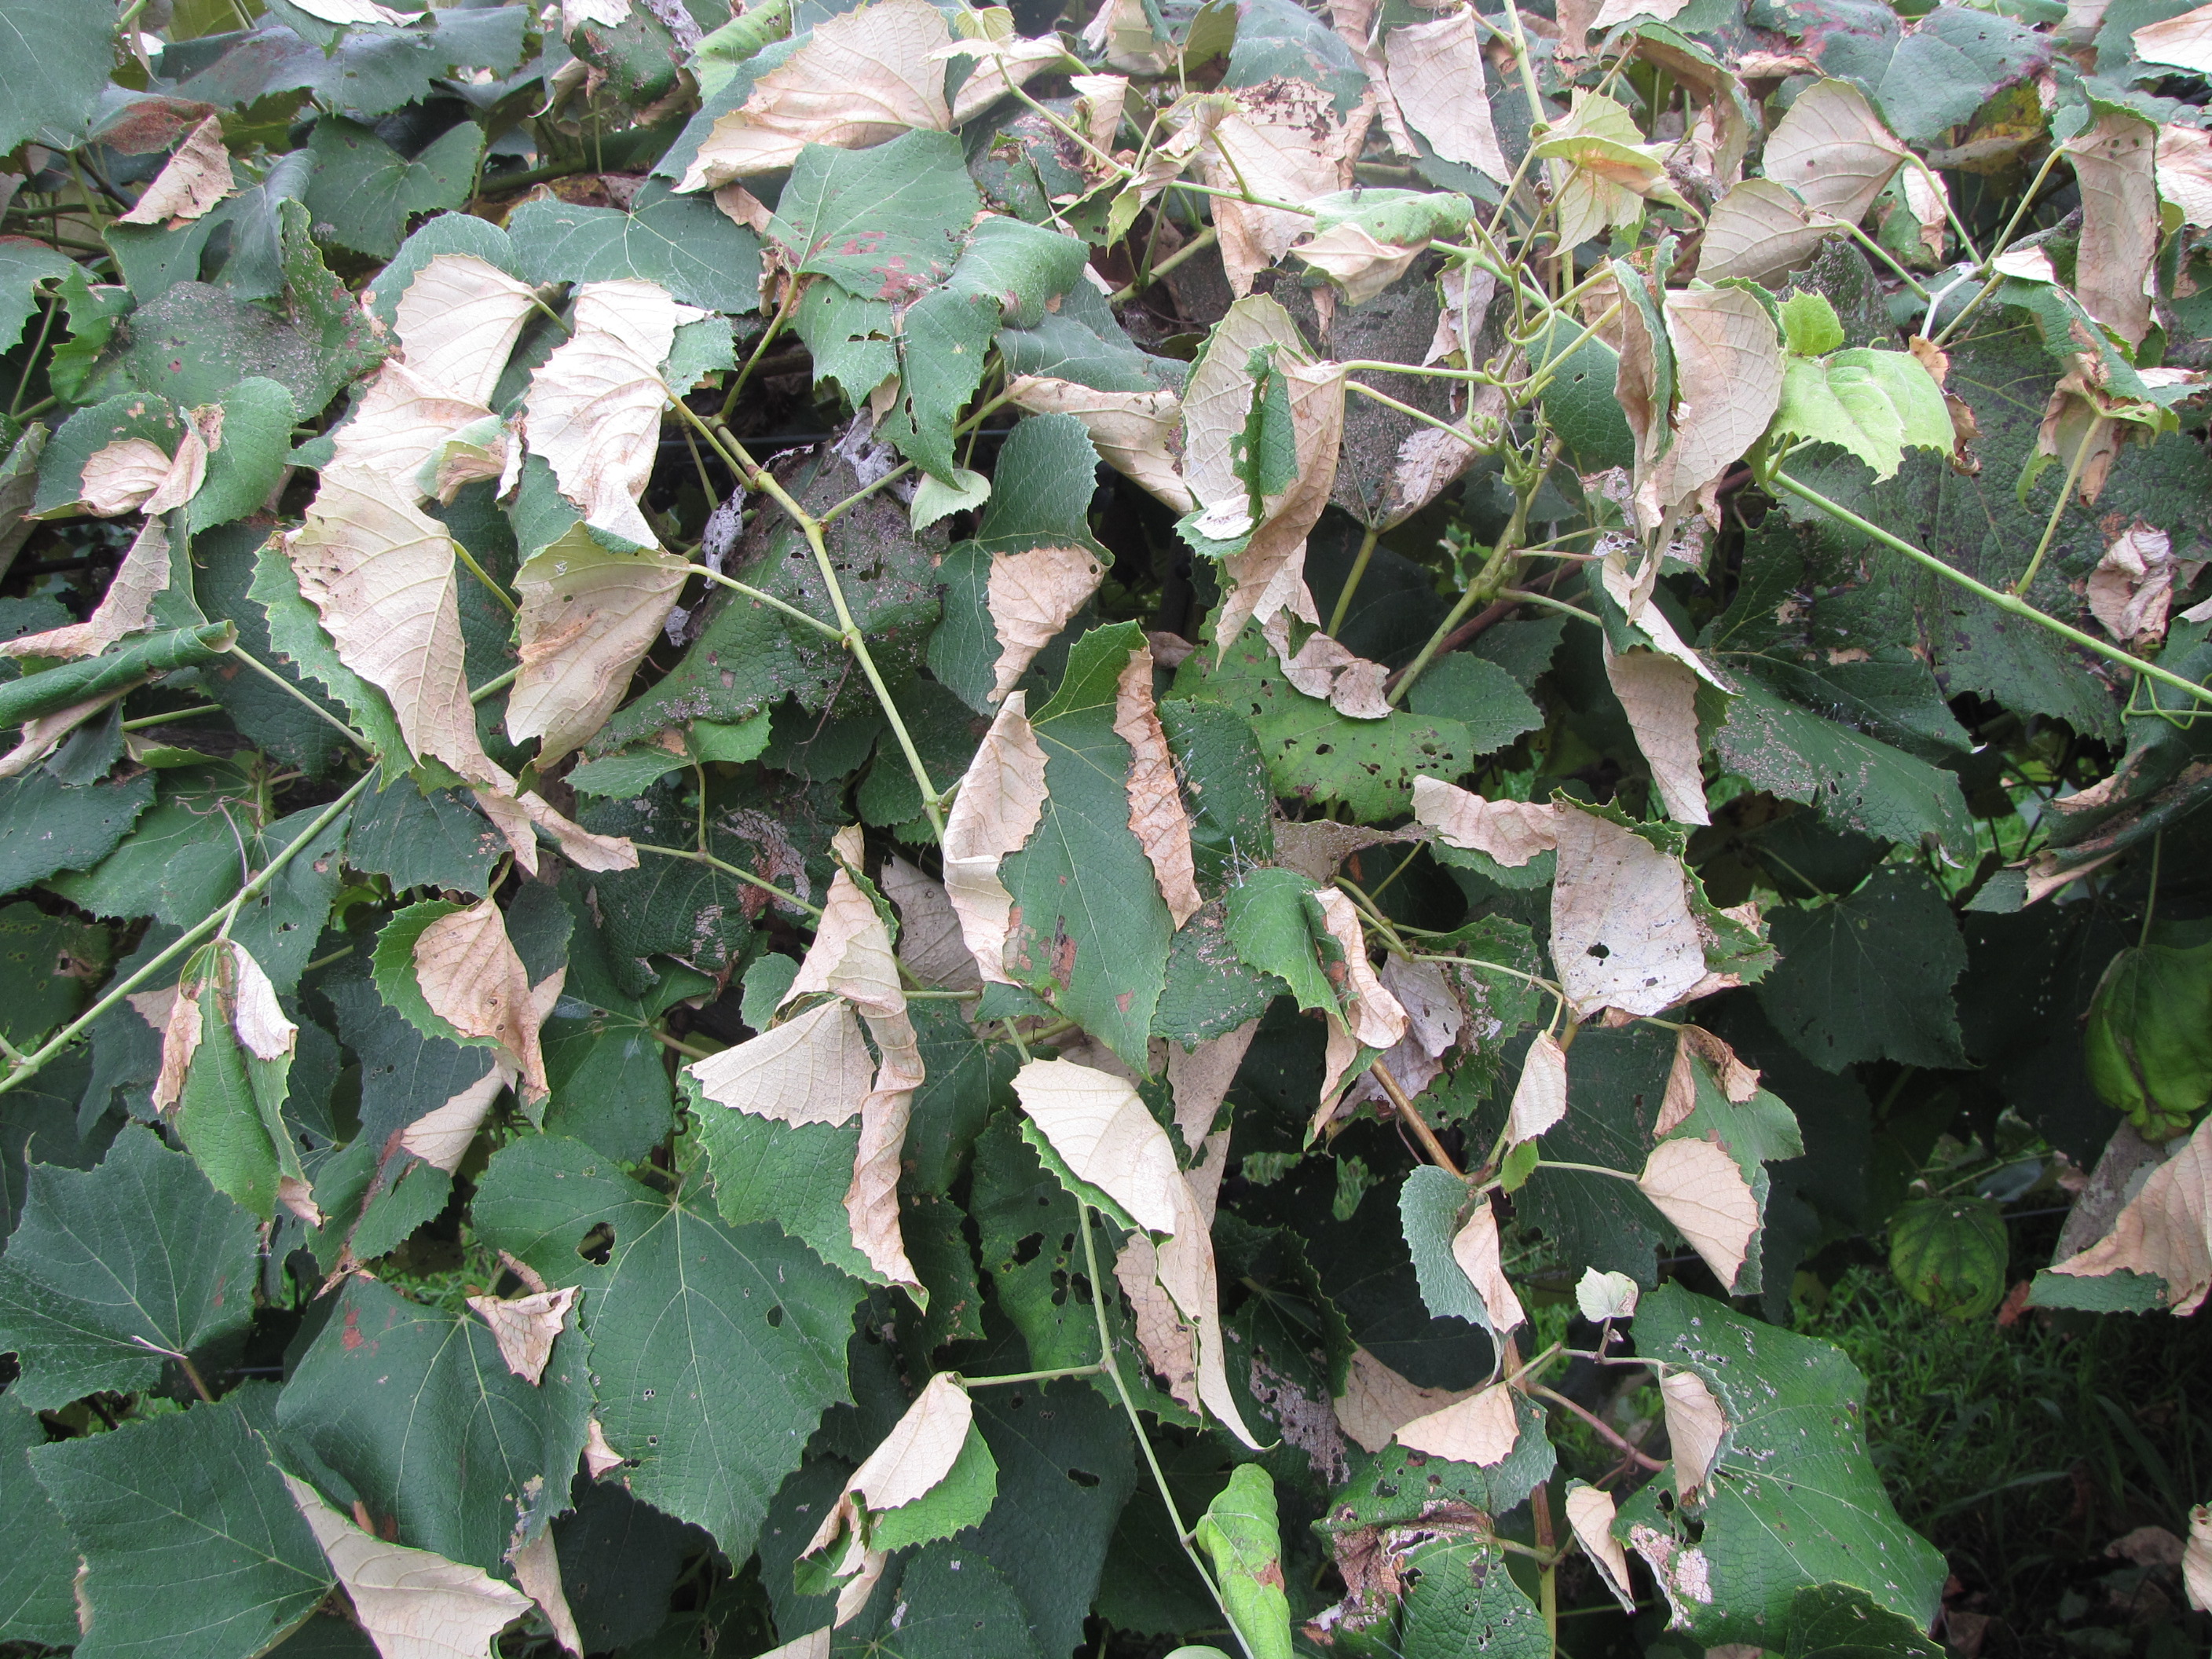 Foliage damage by leafroller larvae. 